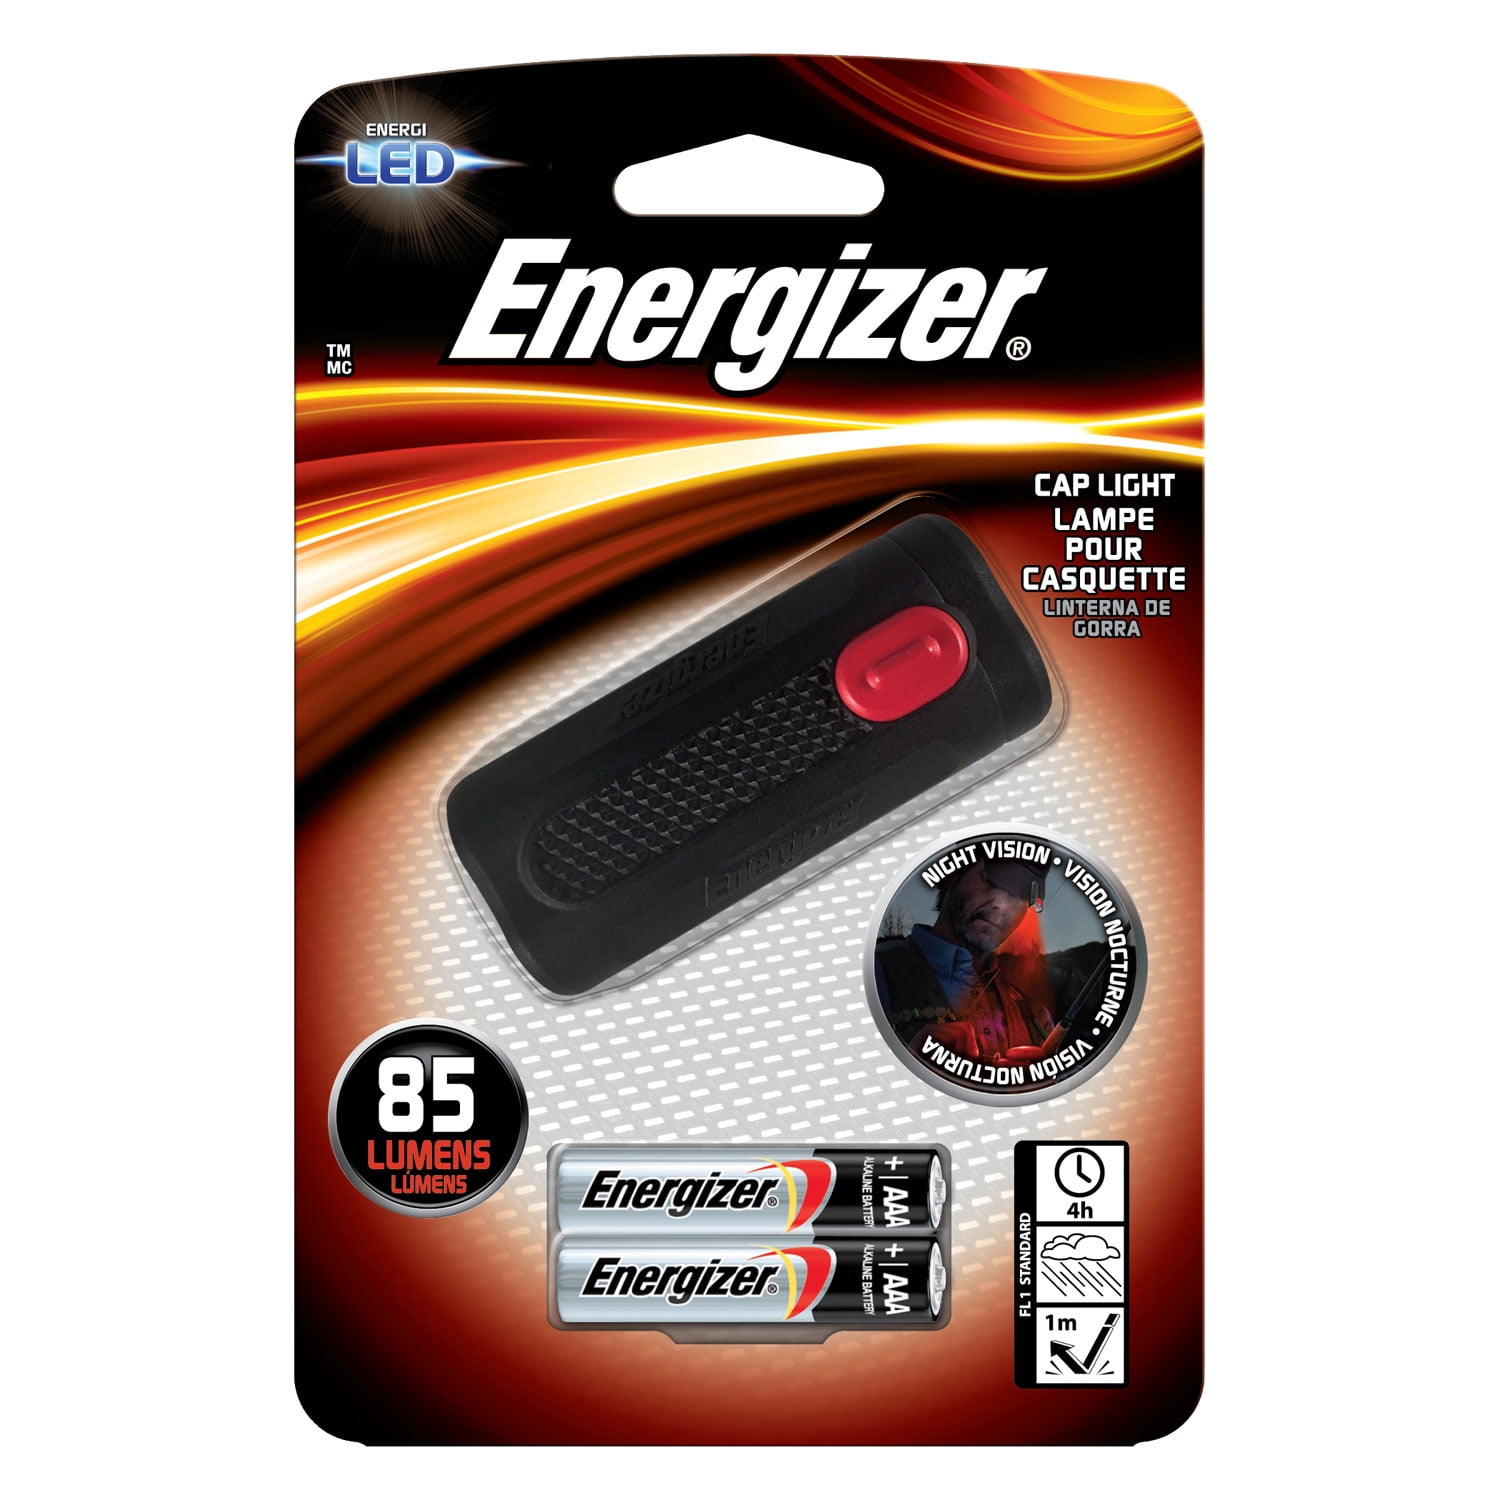 Energizer Cap Light - Walmart.com